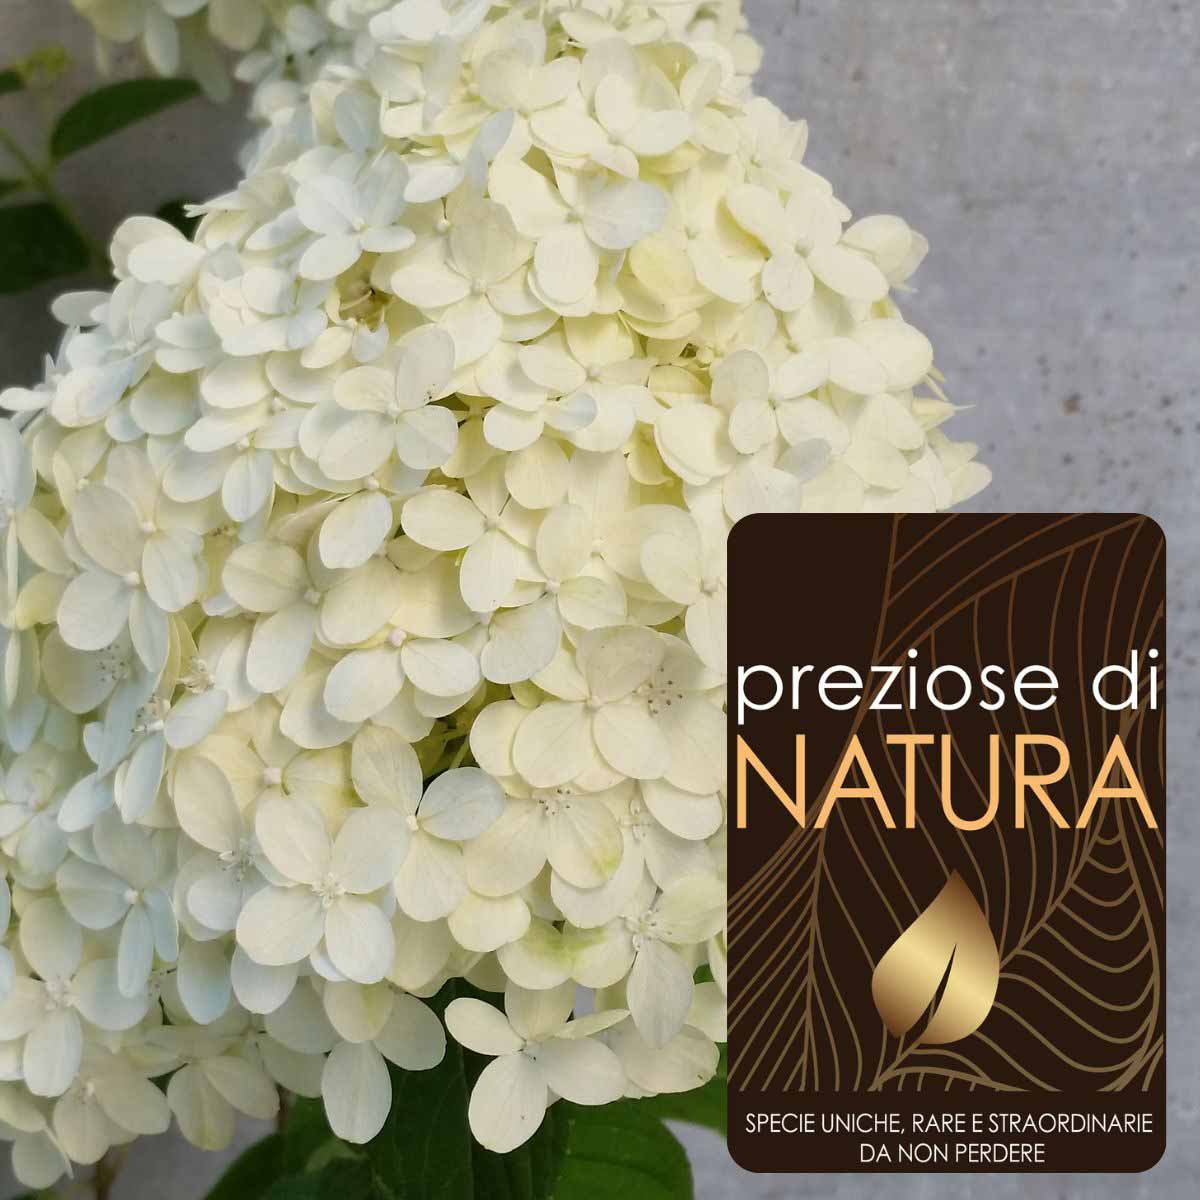 Preziose di Natura – Ortensia Hydrangea paniculata “Limelight” PBR